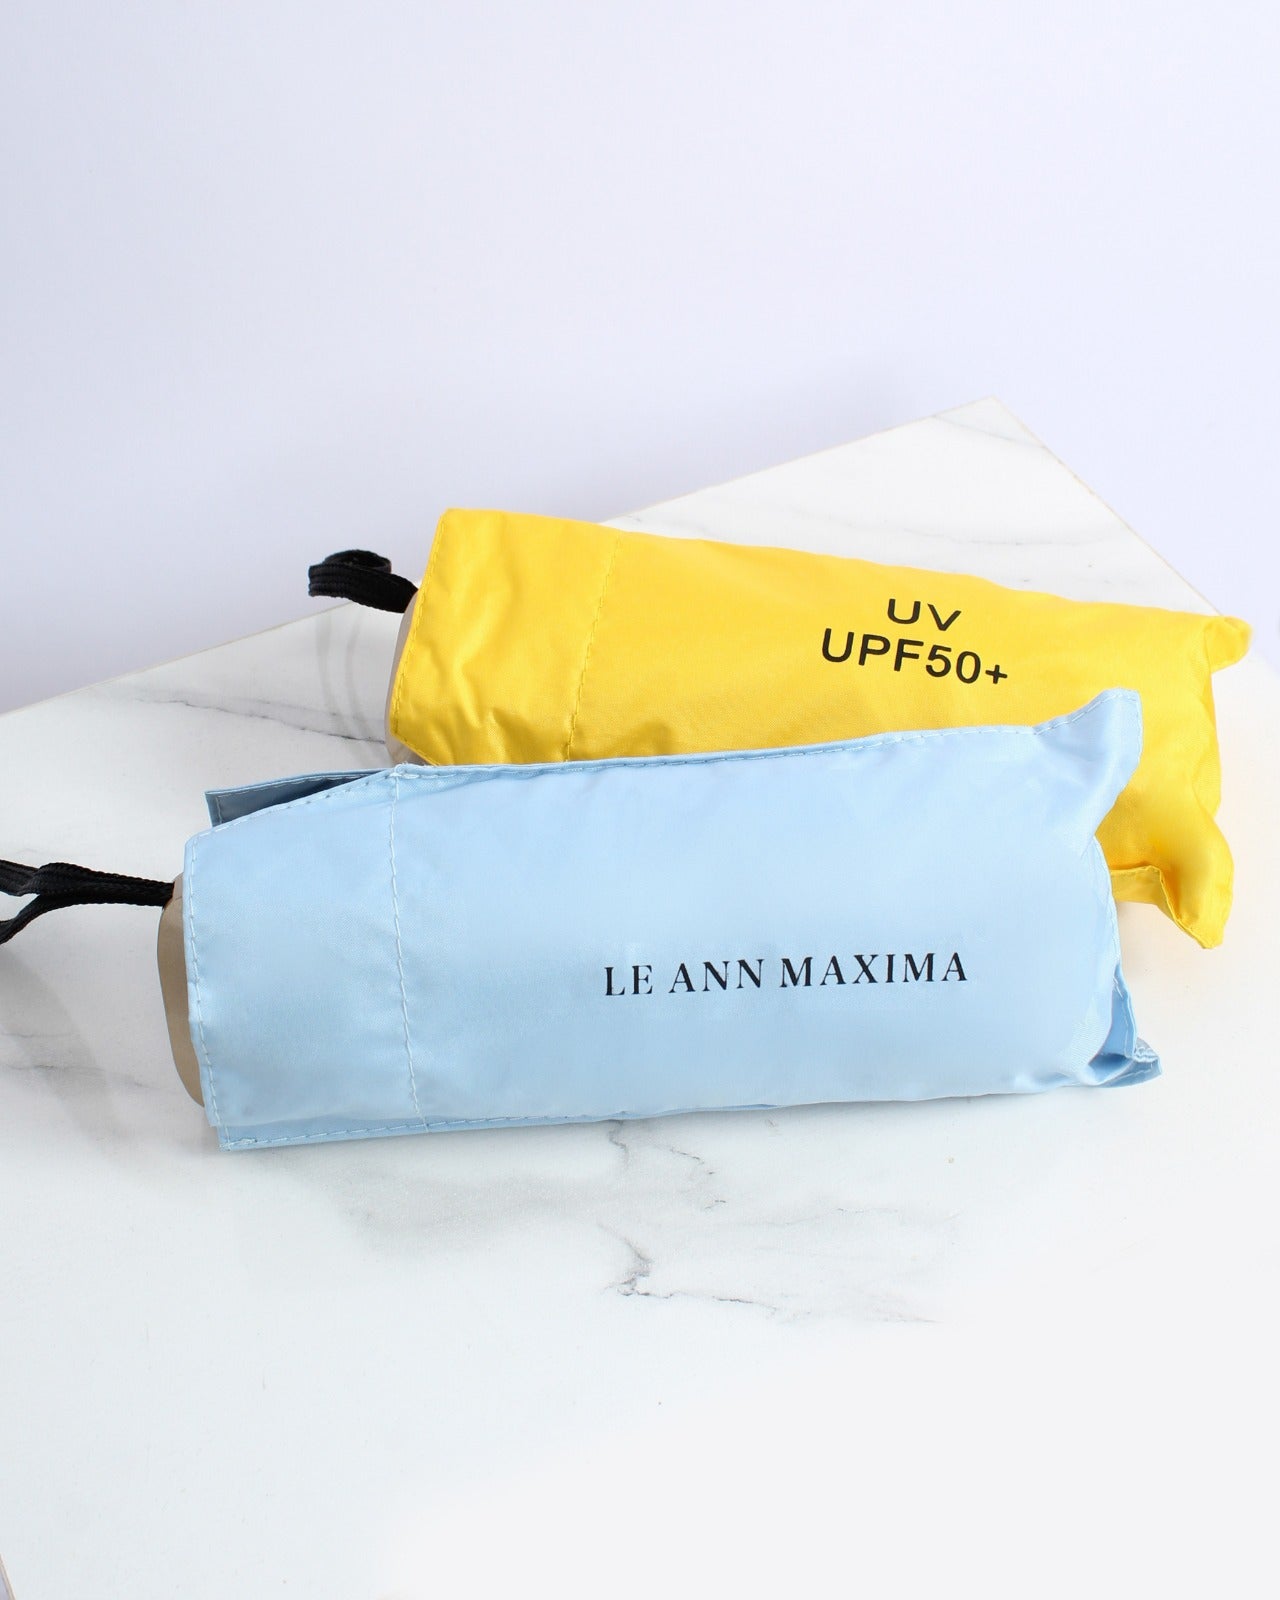 (Free Items) Le Ann Maxima UV Umbrella (Not For Sale)